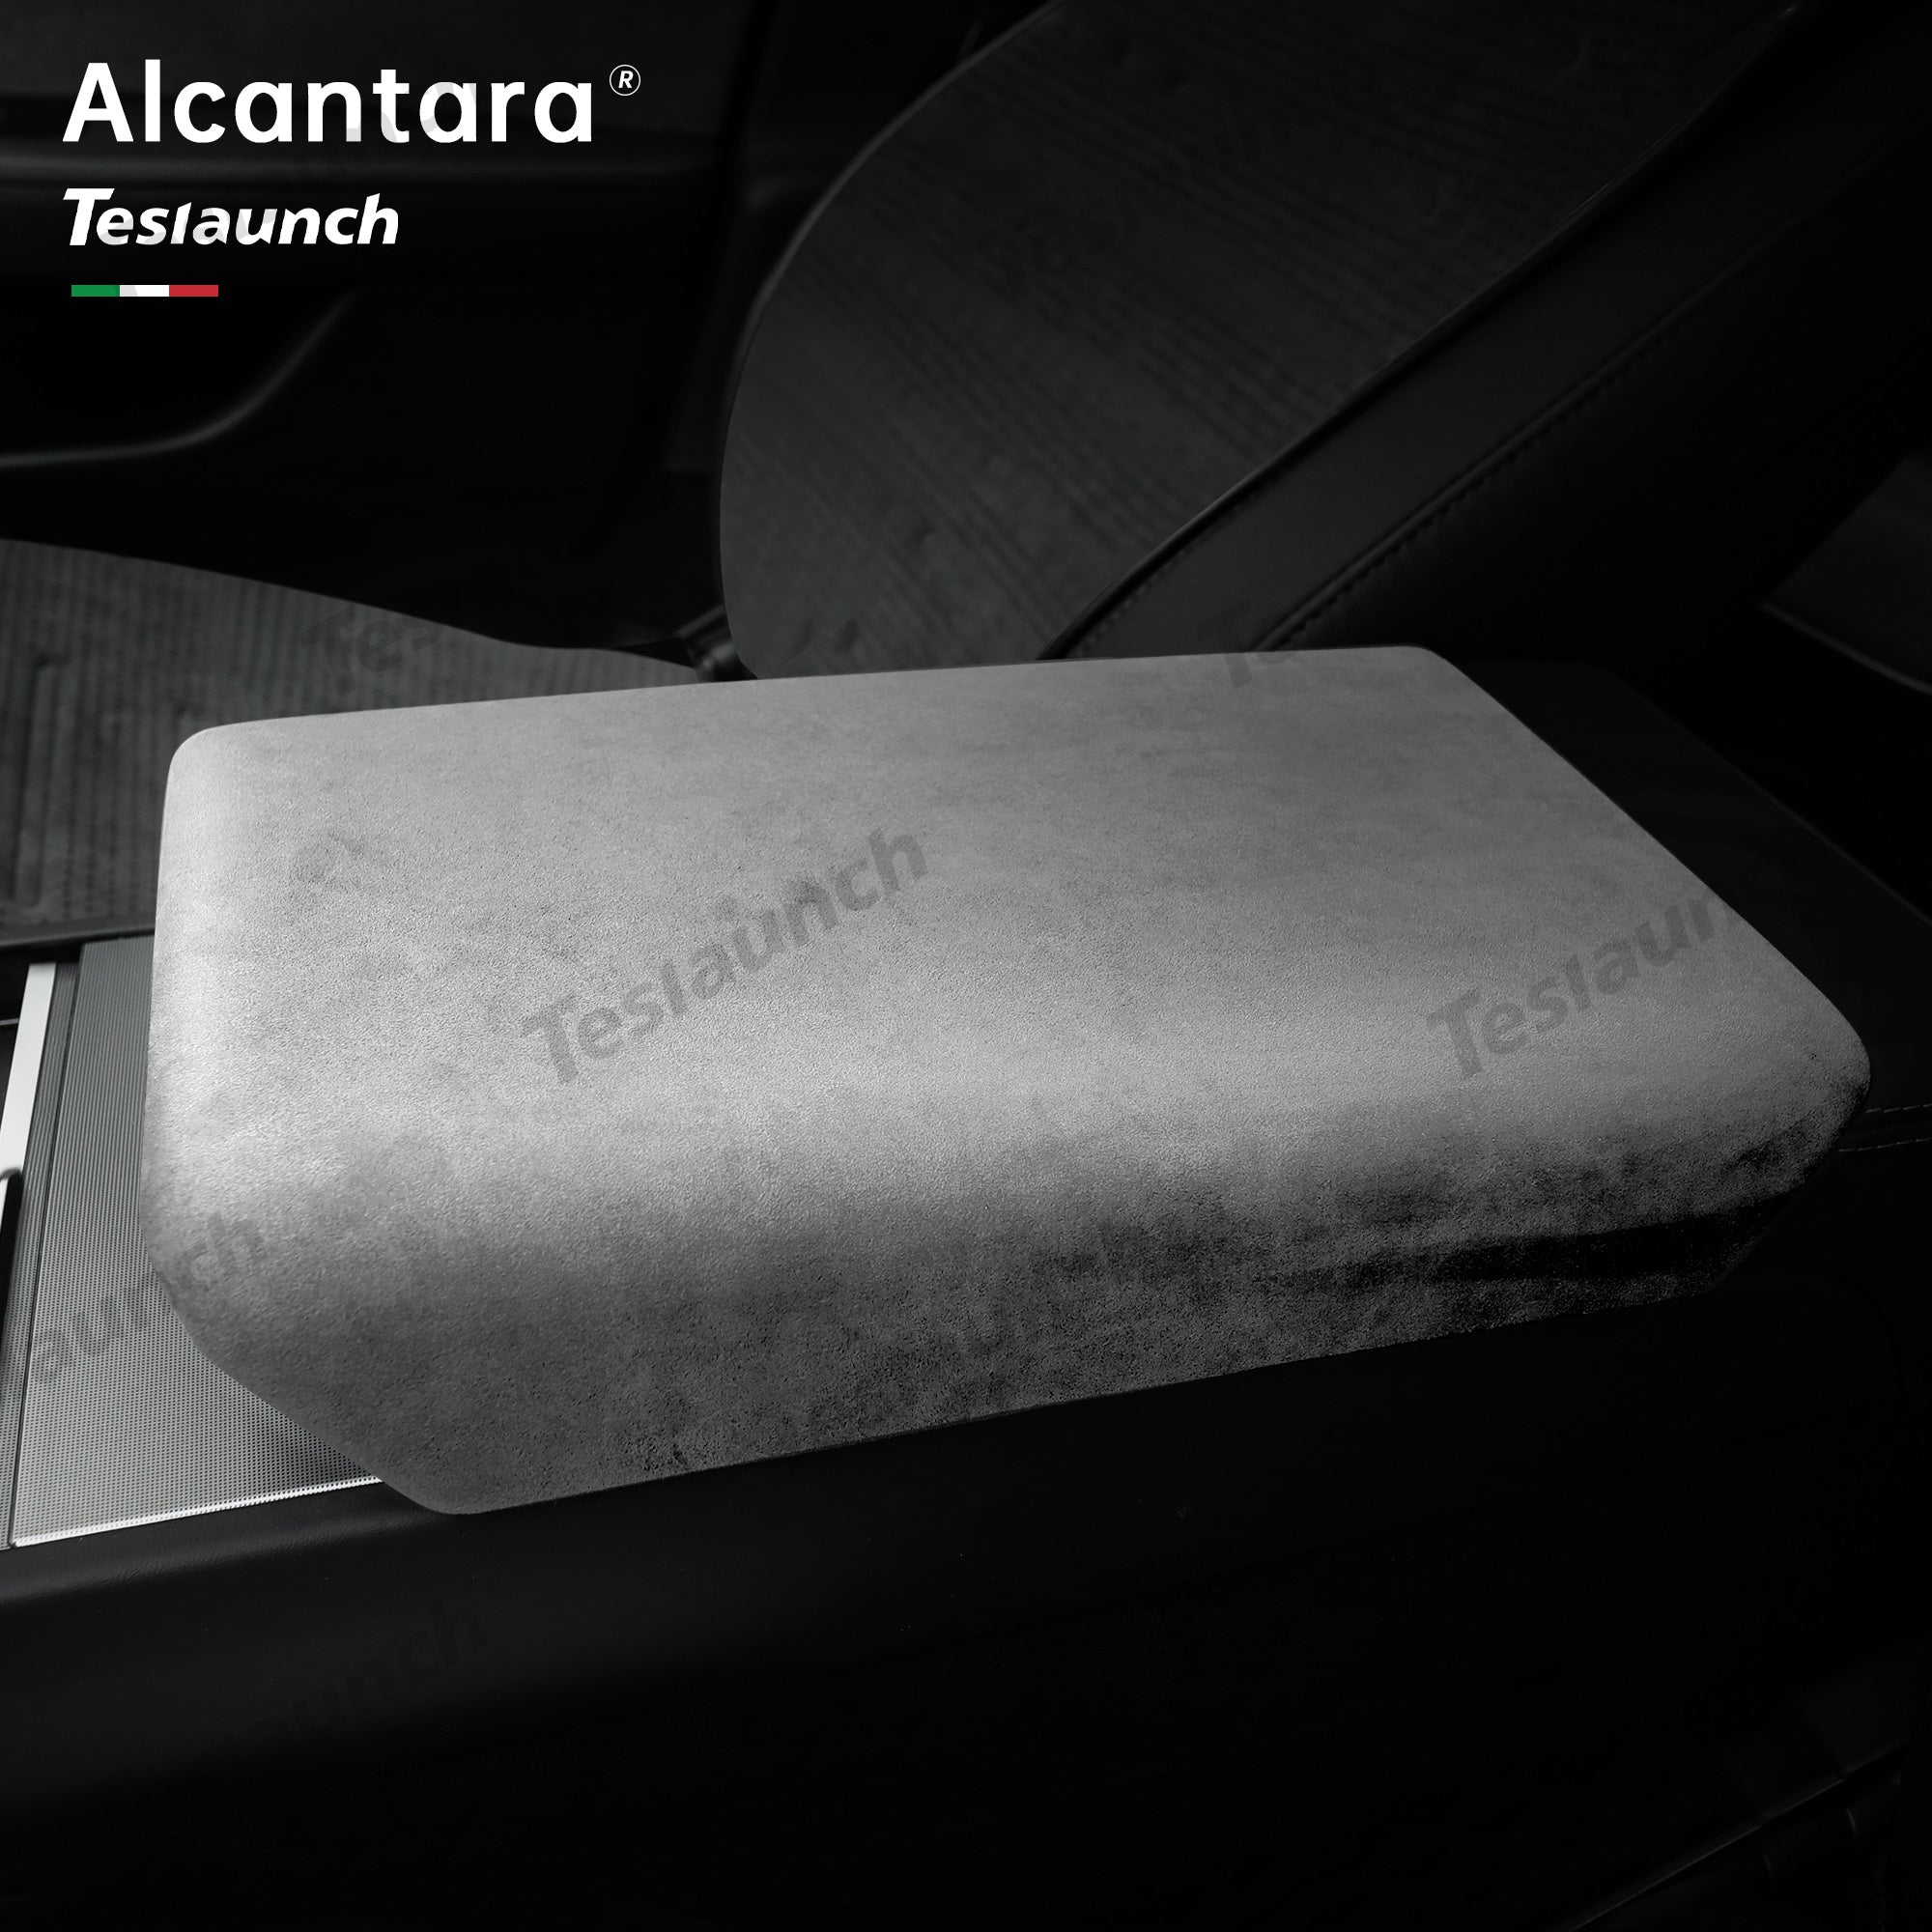 Alcantara Armrest Cover for Model 3 Highland / Y